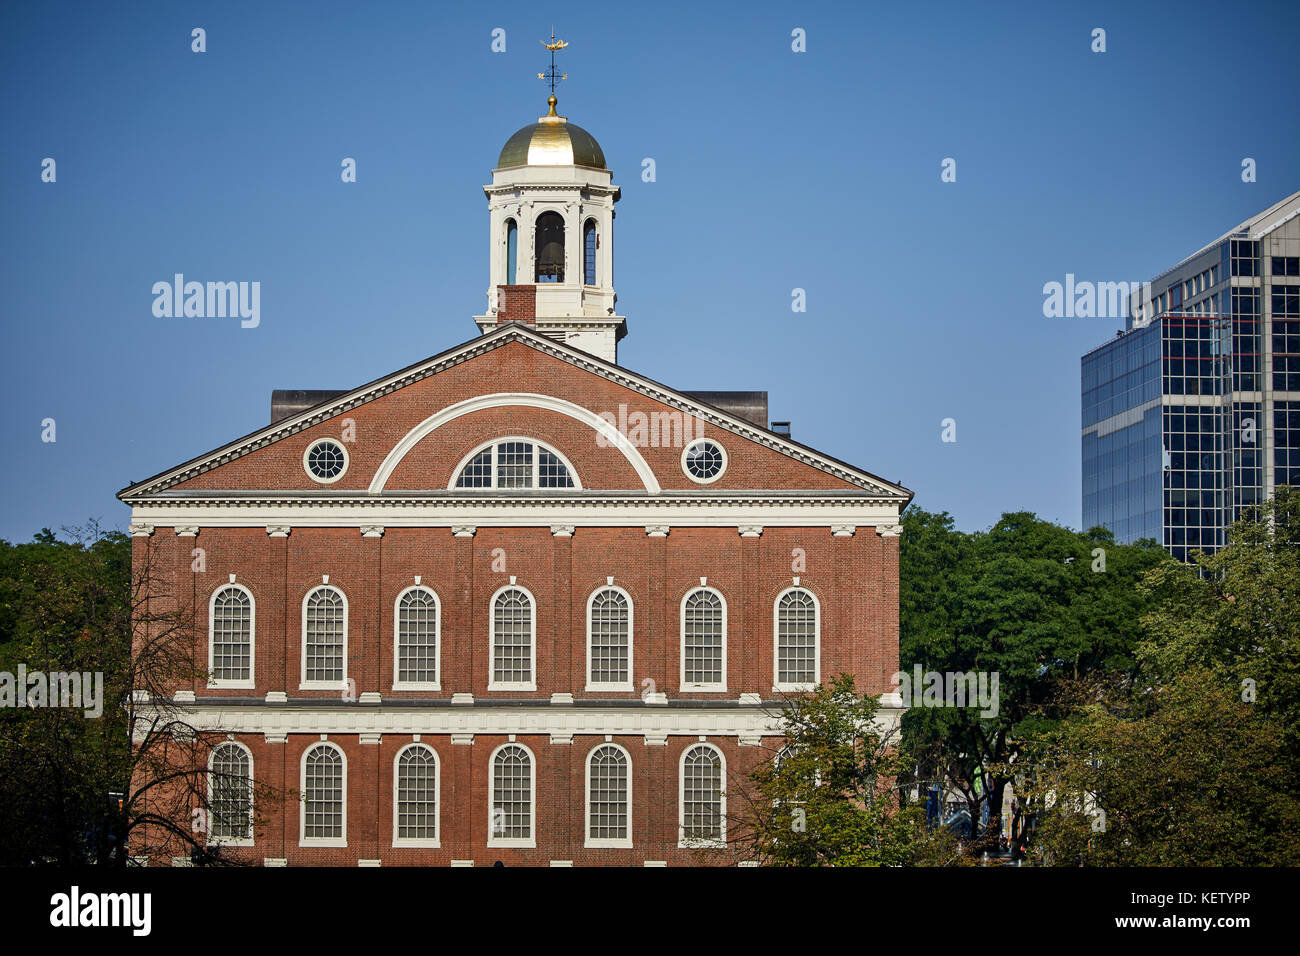 Boston Massachusetts New England Nordamerika USA, Sehenswürdigkeiten Faneuil Hall Marktplatz Gebäude und Park des Freedom Trail Stockfoto